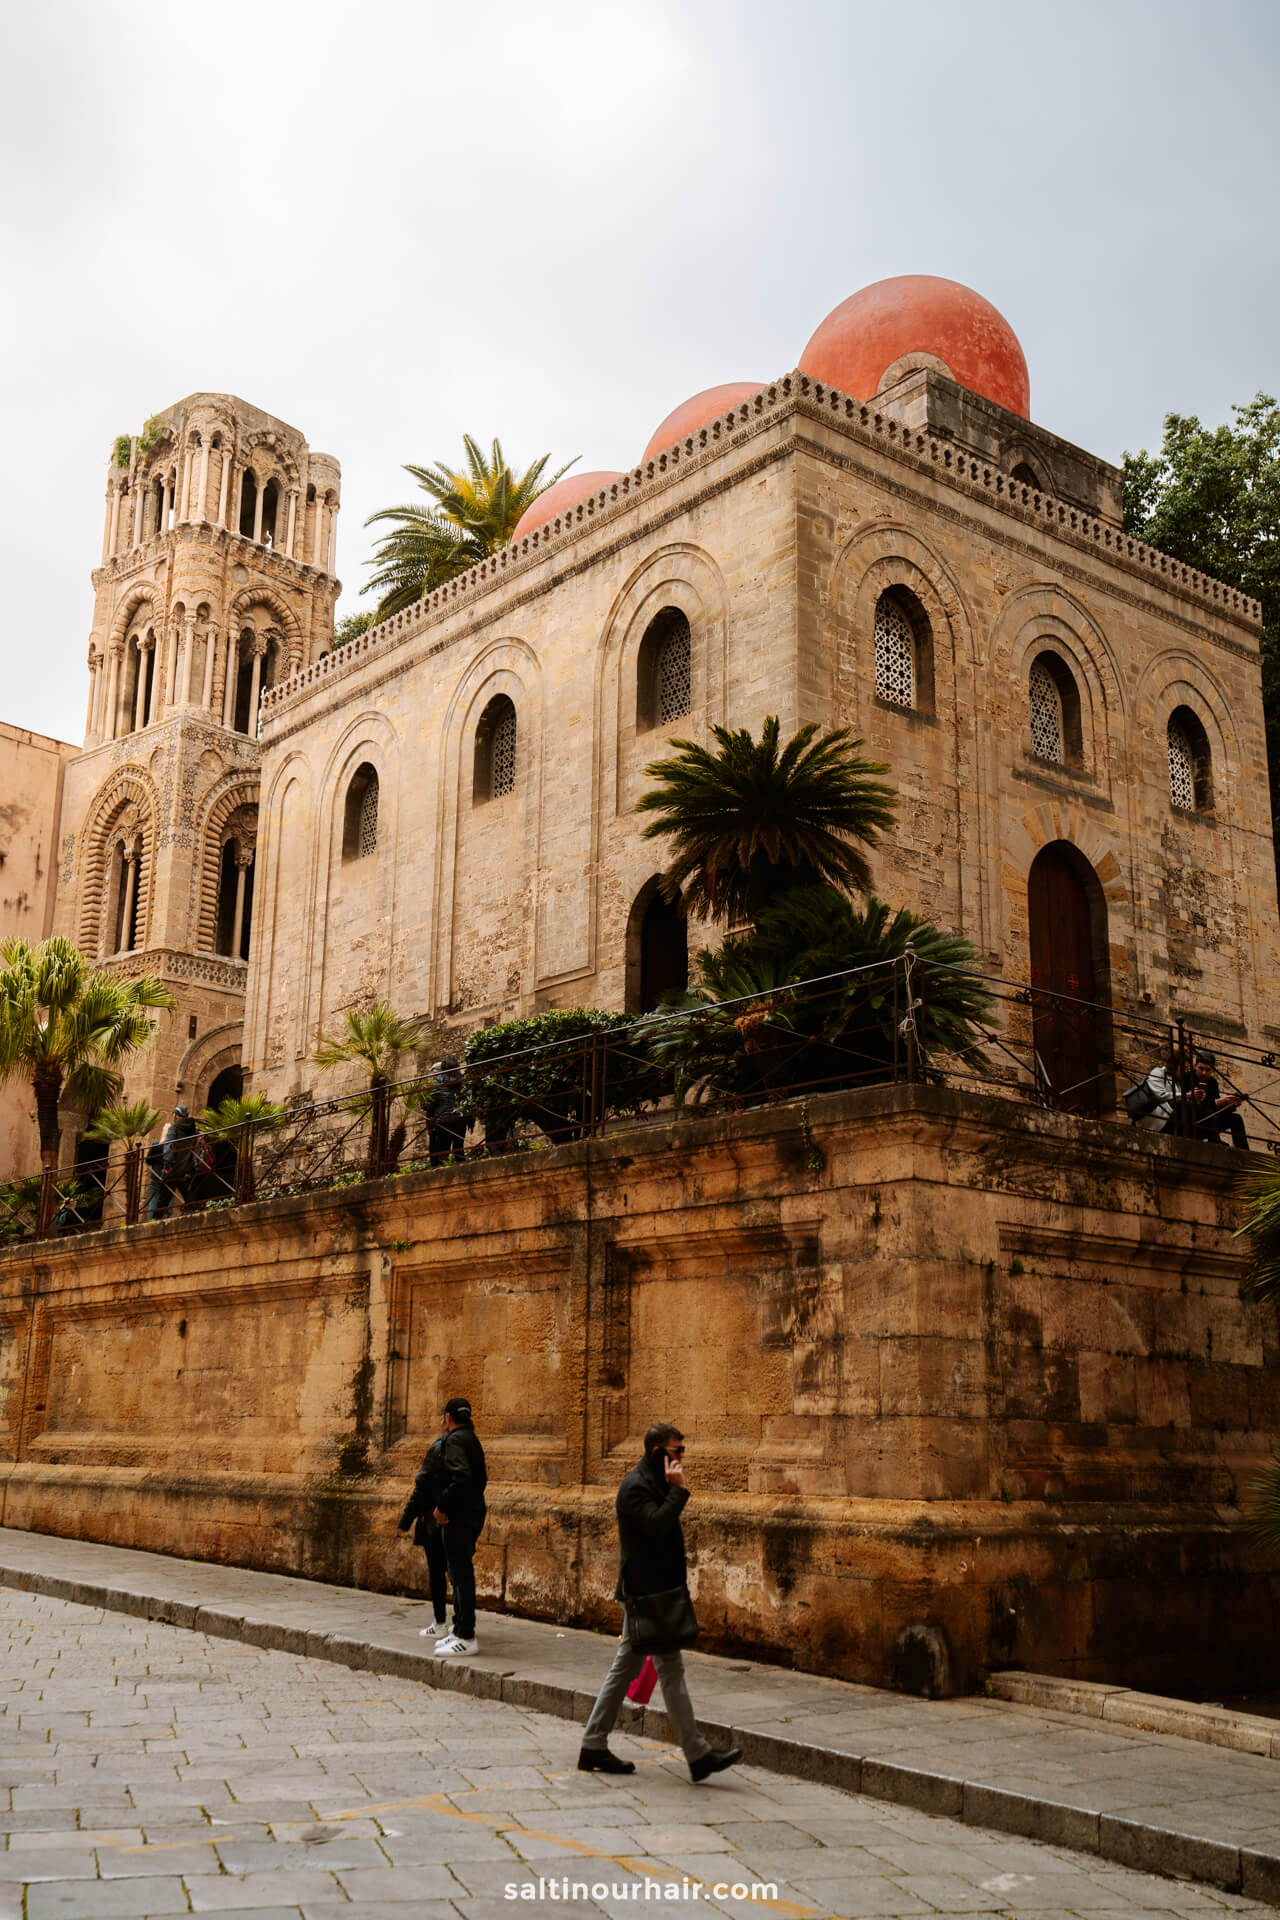 Where to go in Palermo - santa caterina church